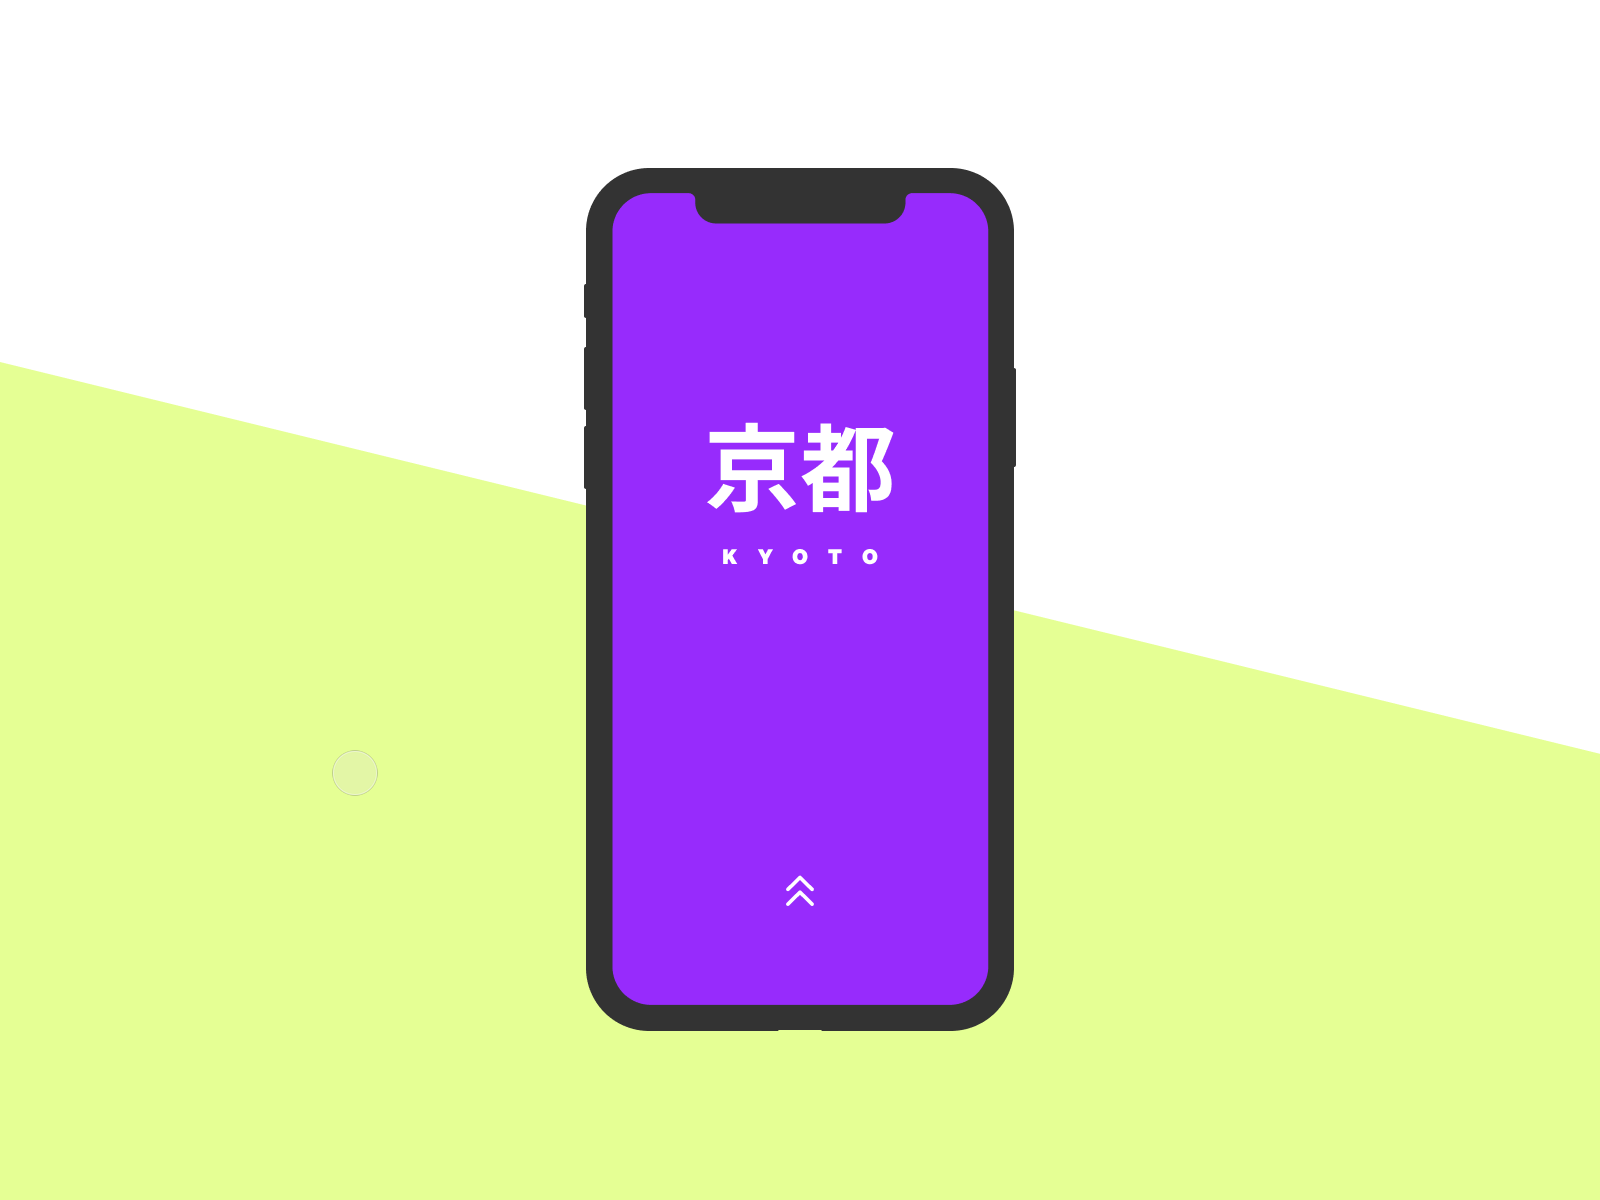 Japan Travel App